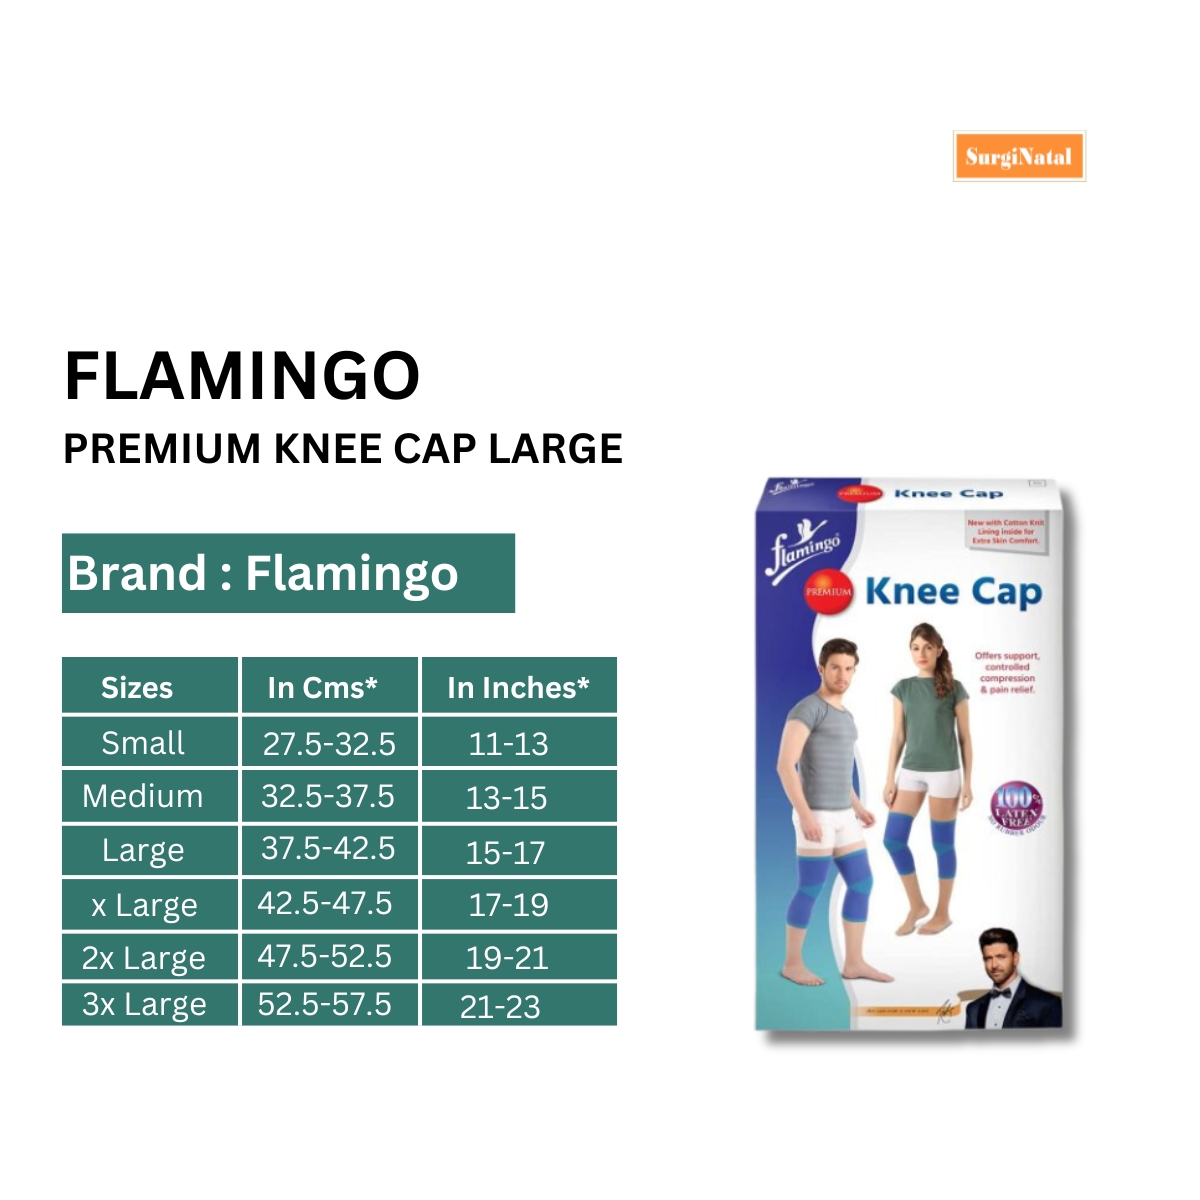 flamingo premium knee cap large